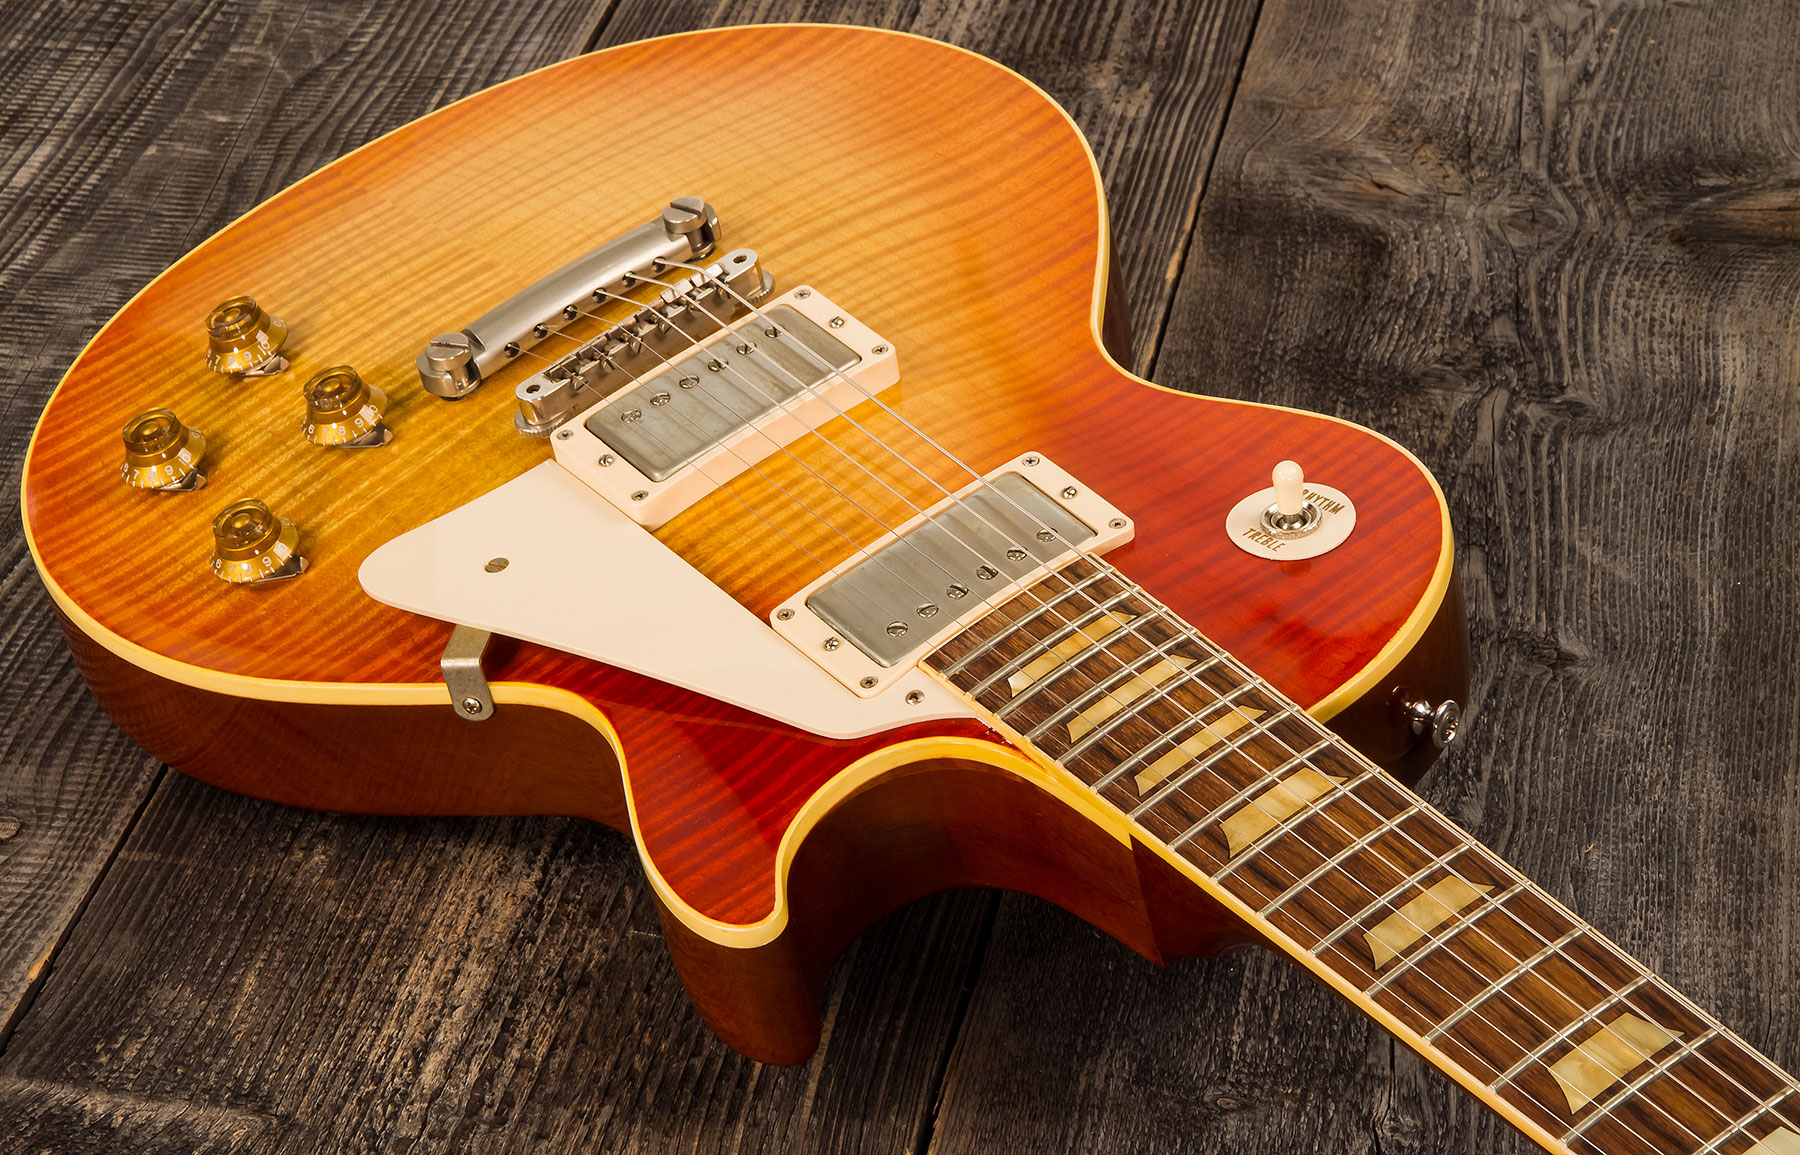 Gibson Custom Shop Les Paul Les Paul 1959 Southern Rock Tribute 2h Rw #srt0021 - Vos Reverse Burst - Guitarra eléctrica de corte único. - Variation 1